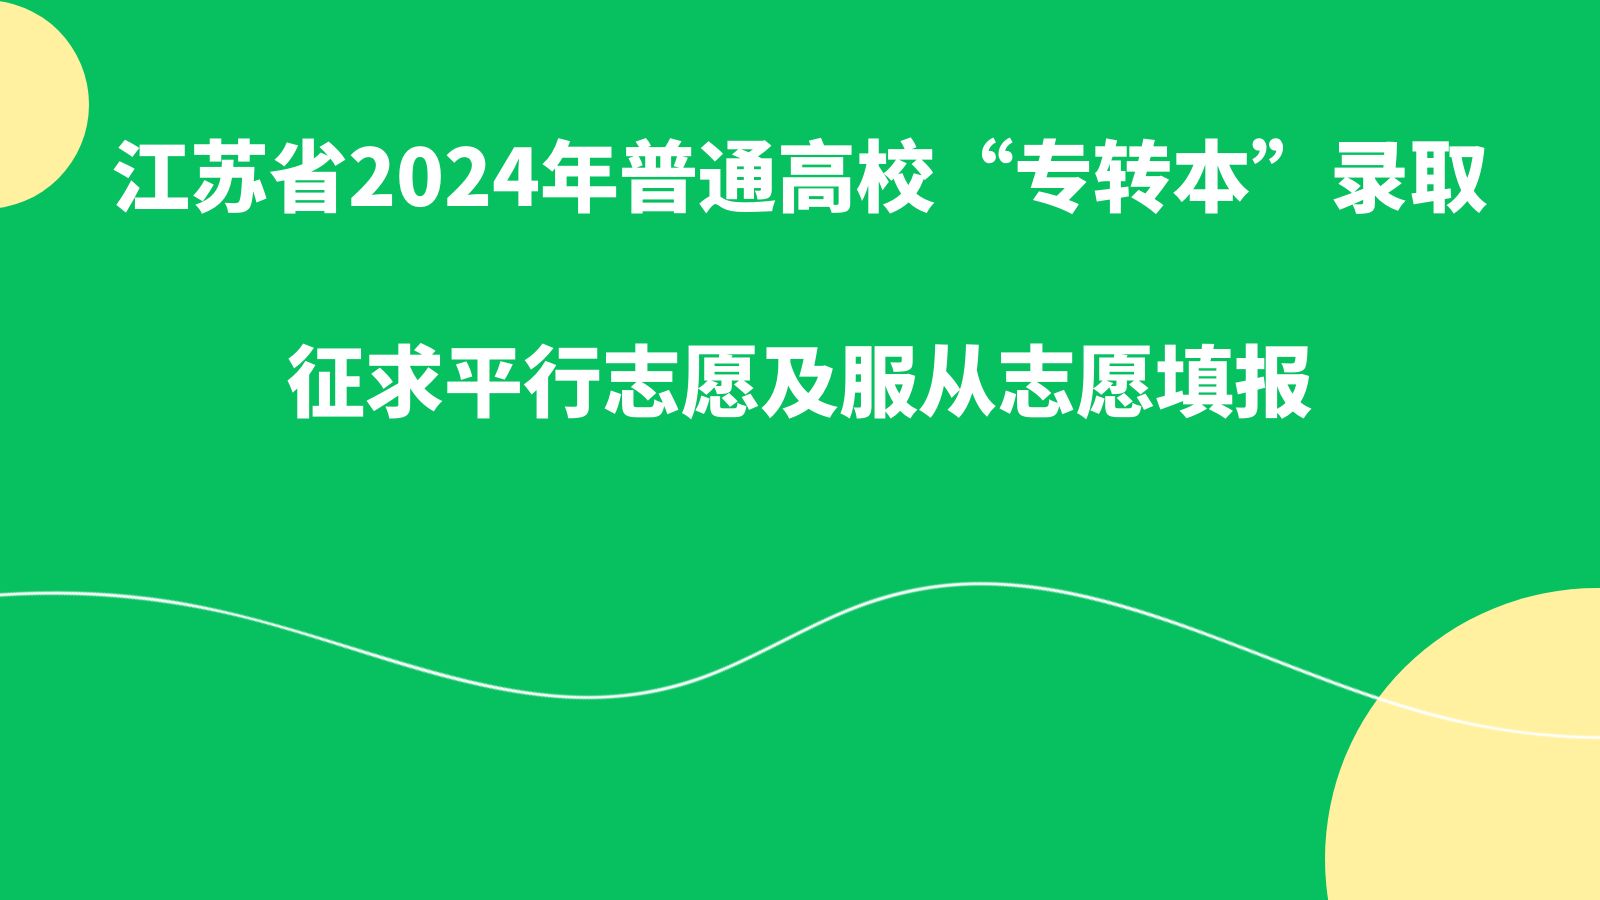 江苏省2024年普通高校“专转本”录取征求平行志愿及服从志愿填报